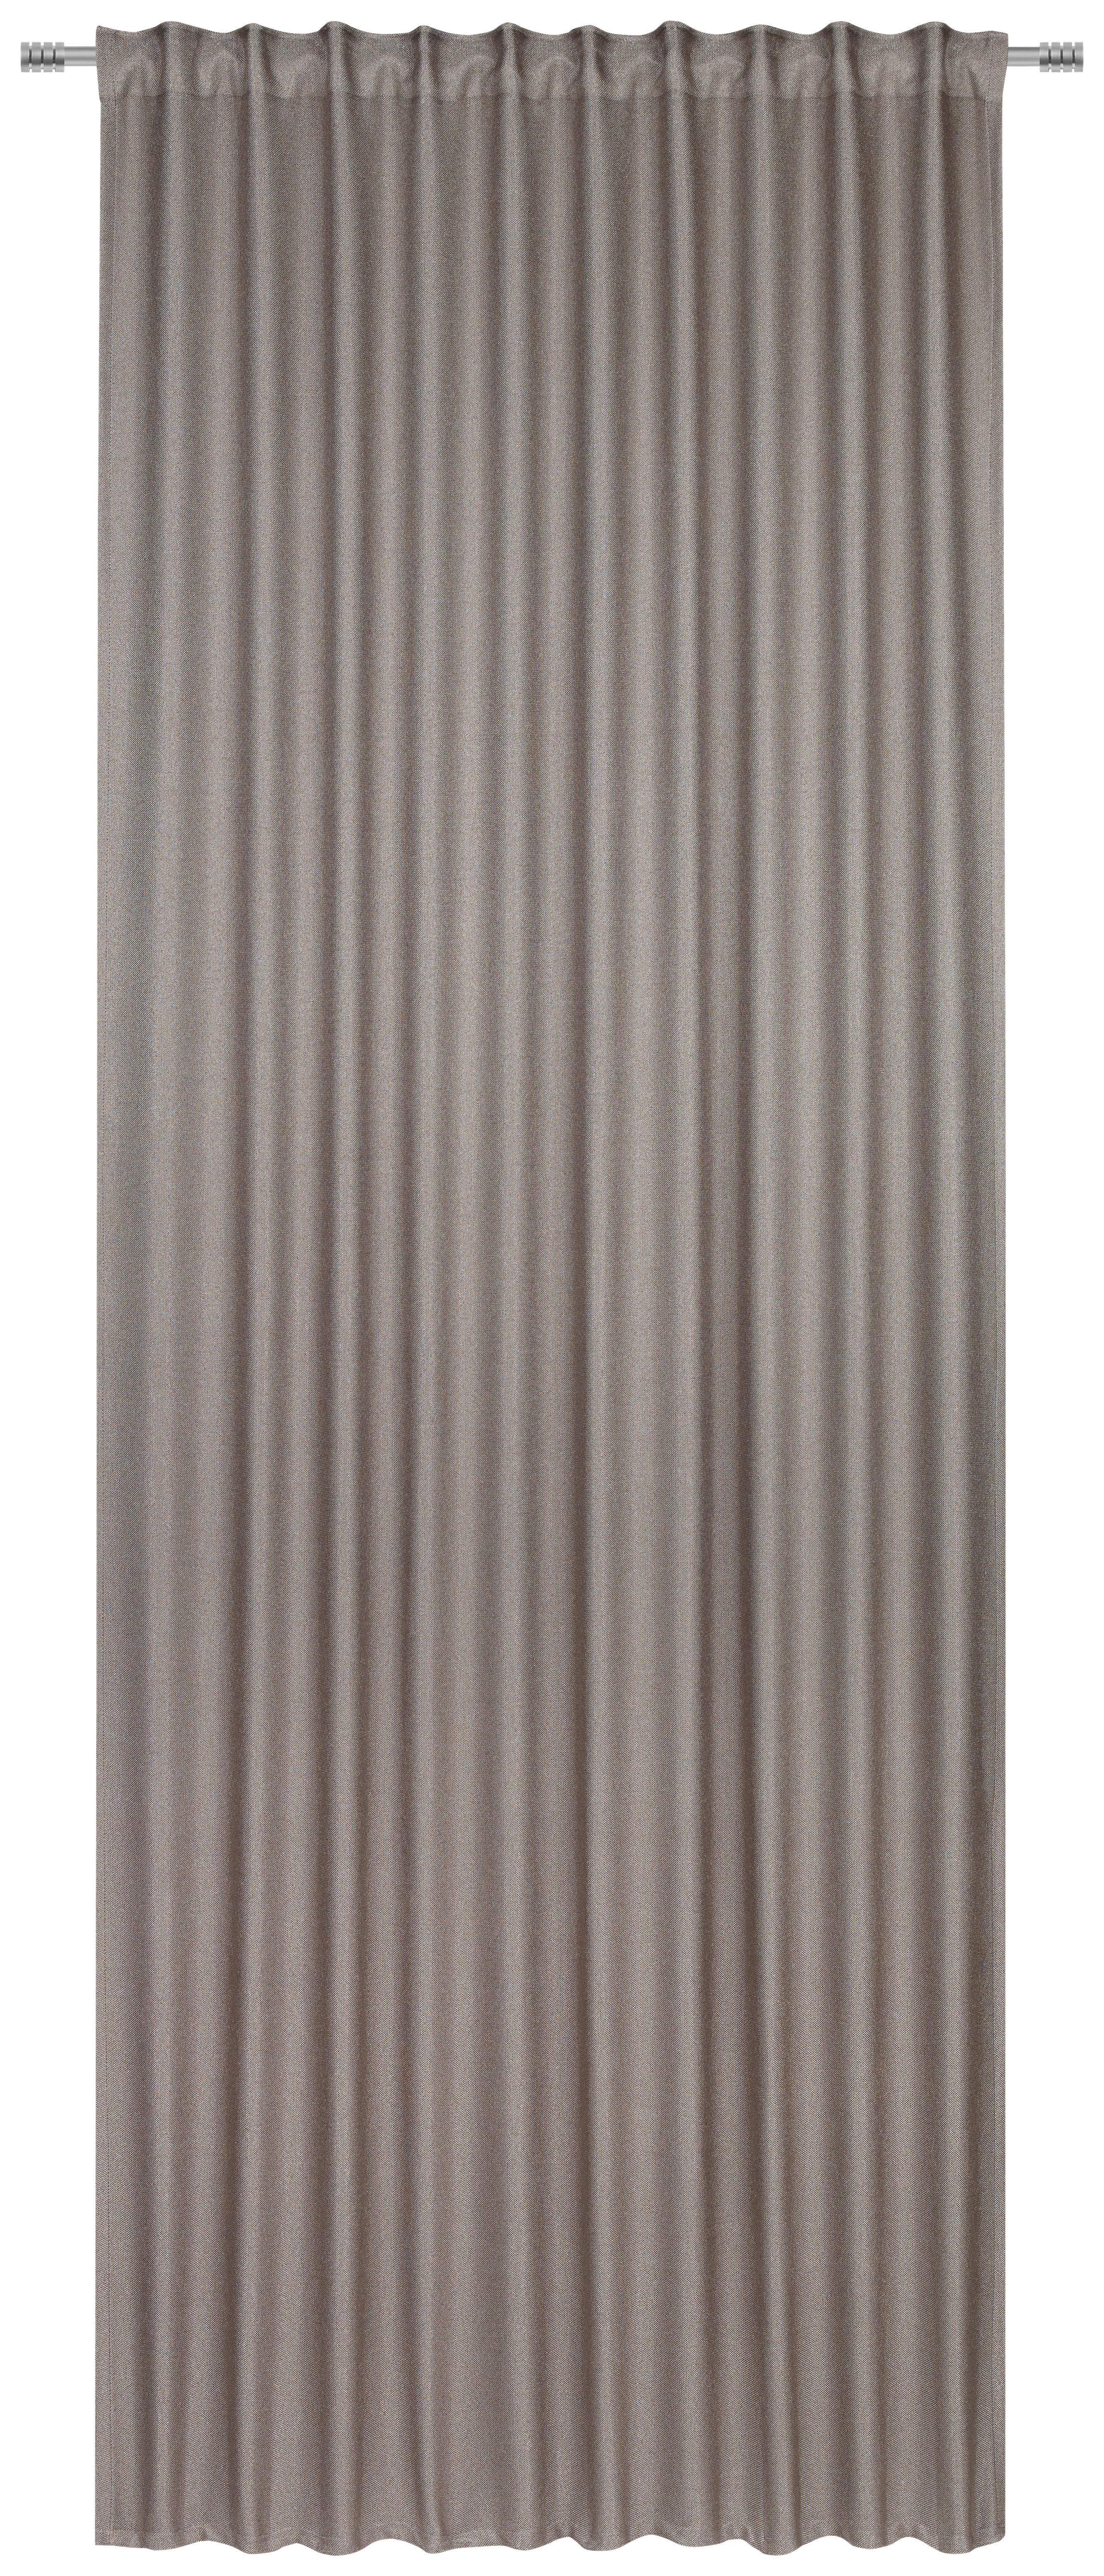 FERTIGVORHANG black-out (lichtundurchlässig)  - Taupe, Konventionell, Textil (140/260cm) - Dieter Knoll